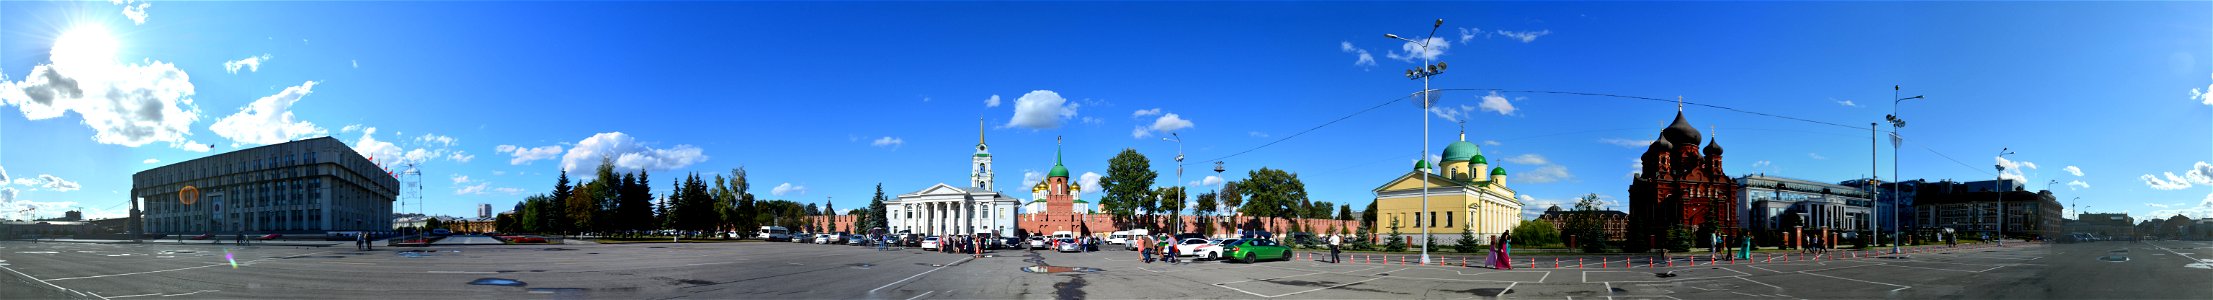 Square next to Tula Kremlin photo